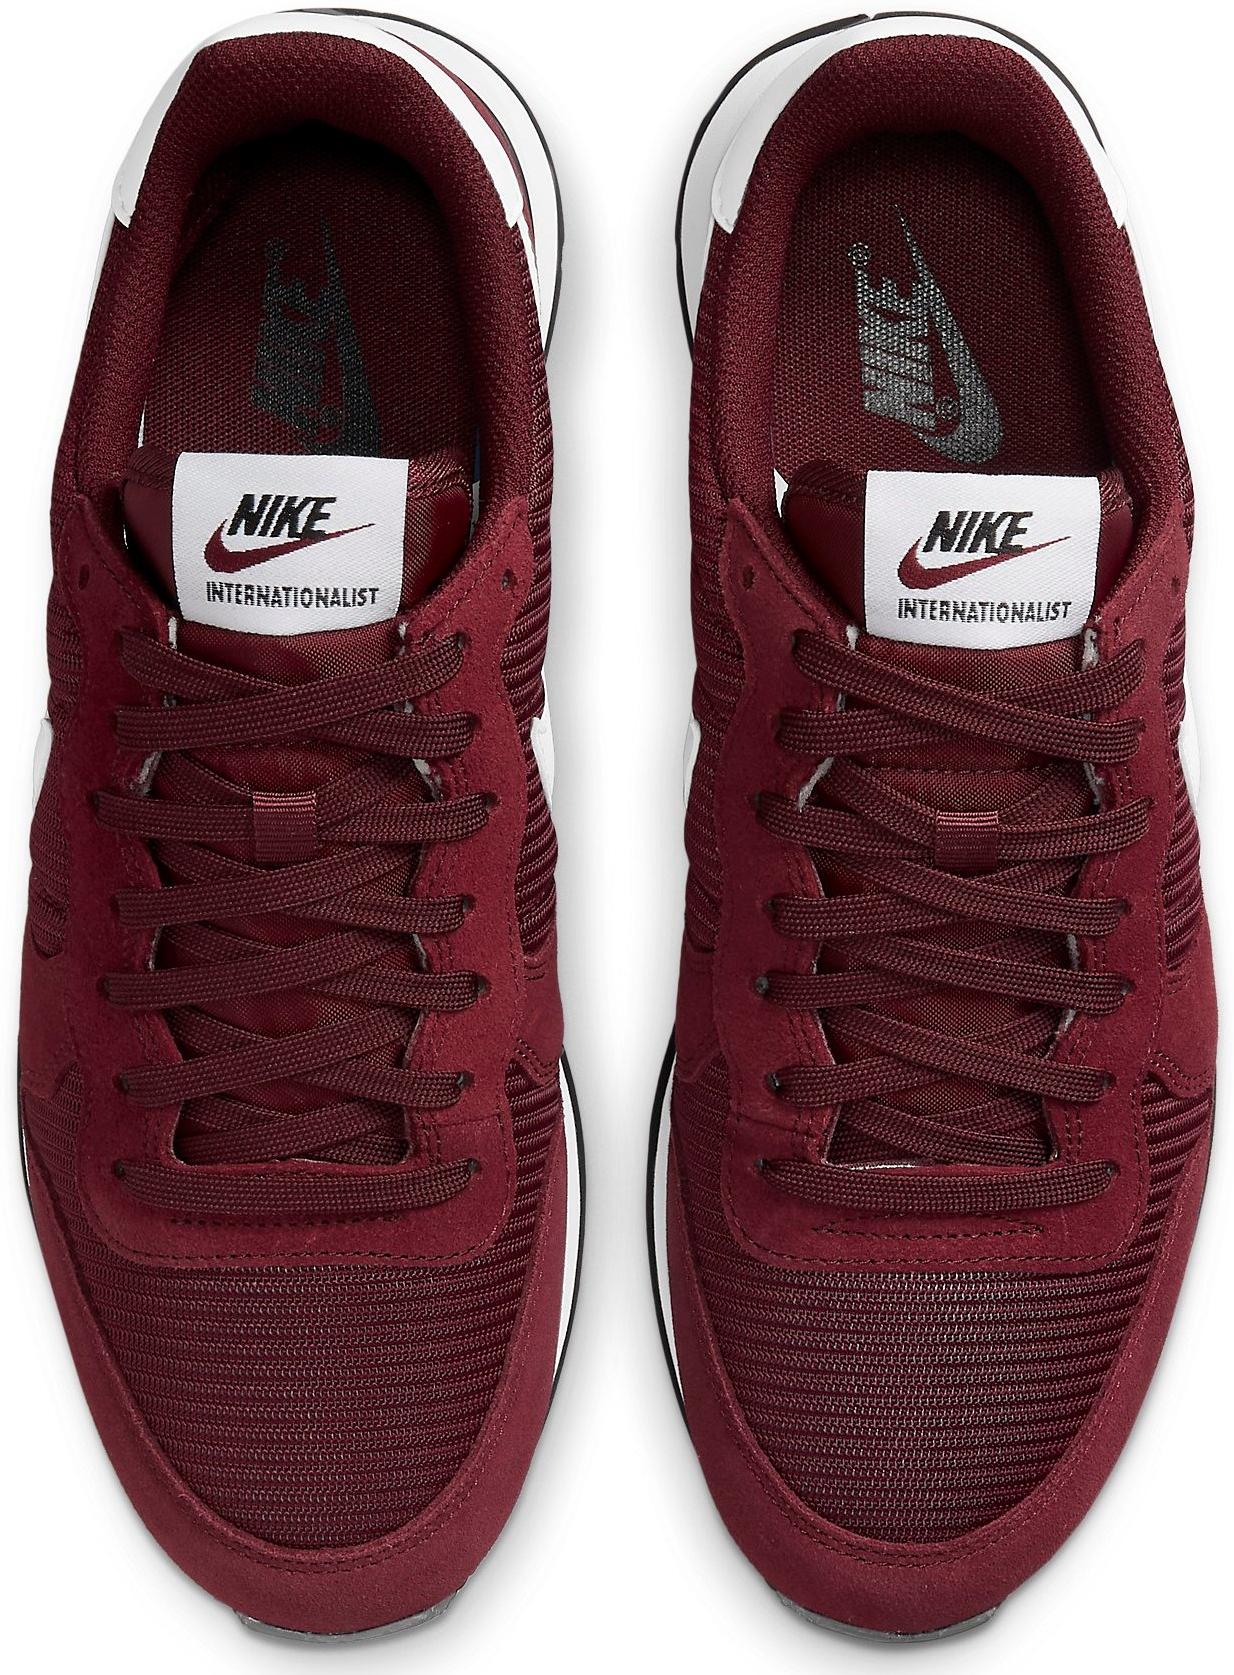 nerveus worden ondergeschikt replica Shoes Nike Internationalist - Top4Football.com